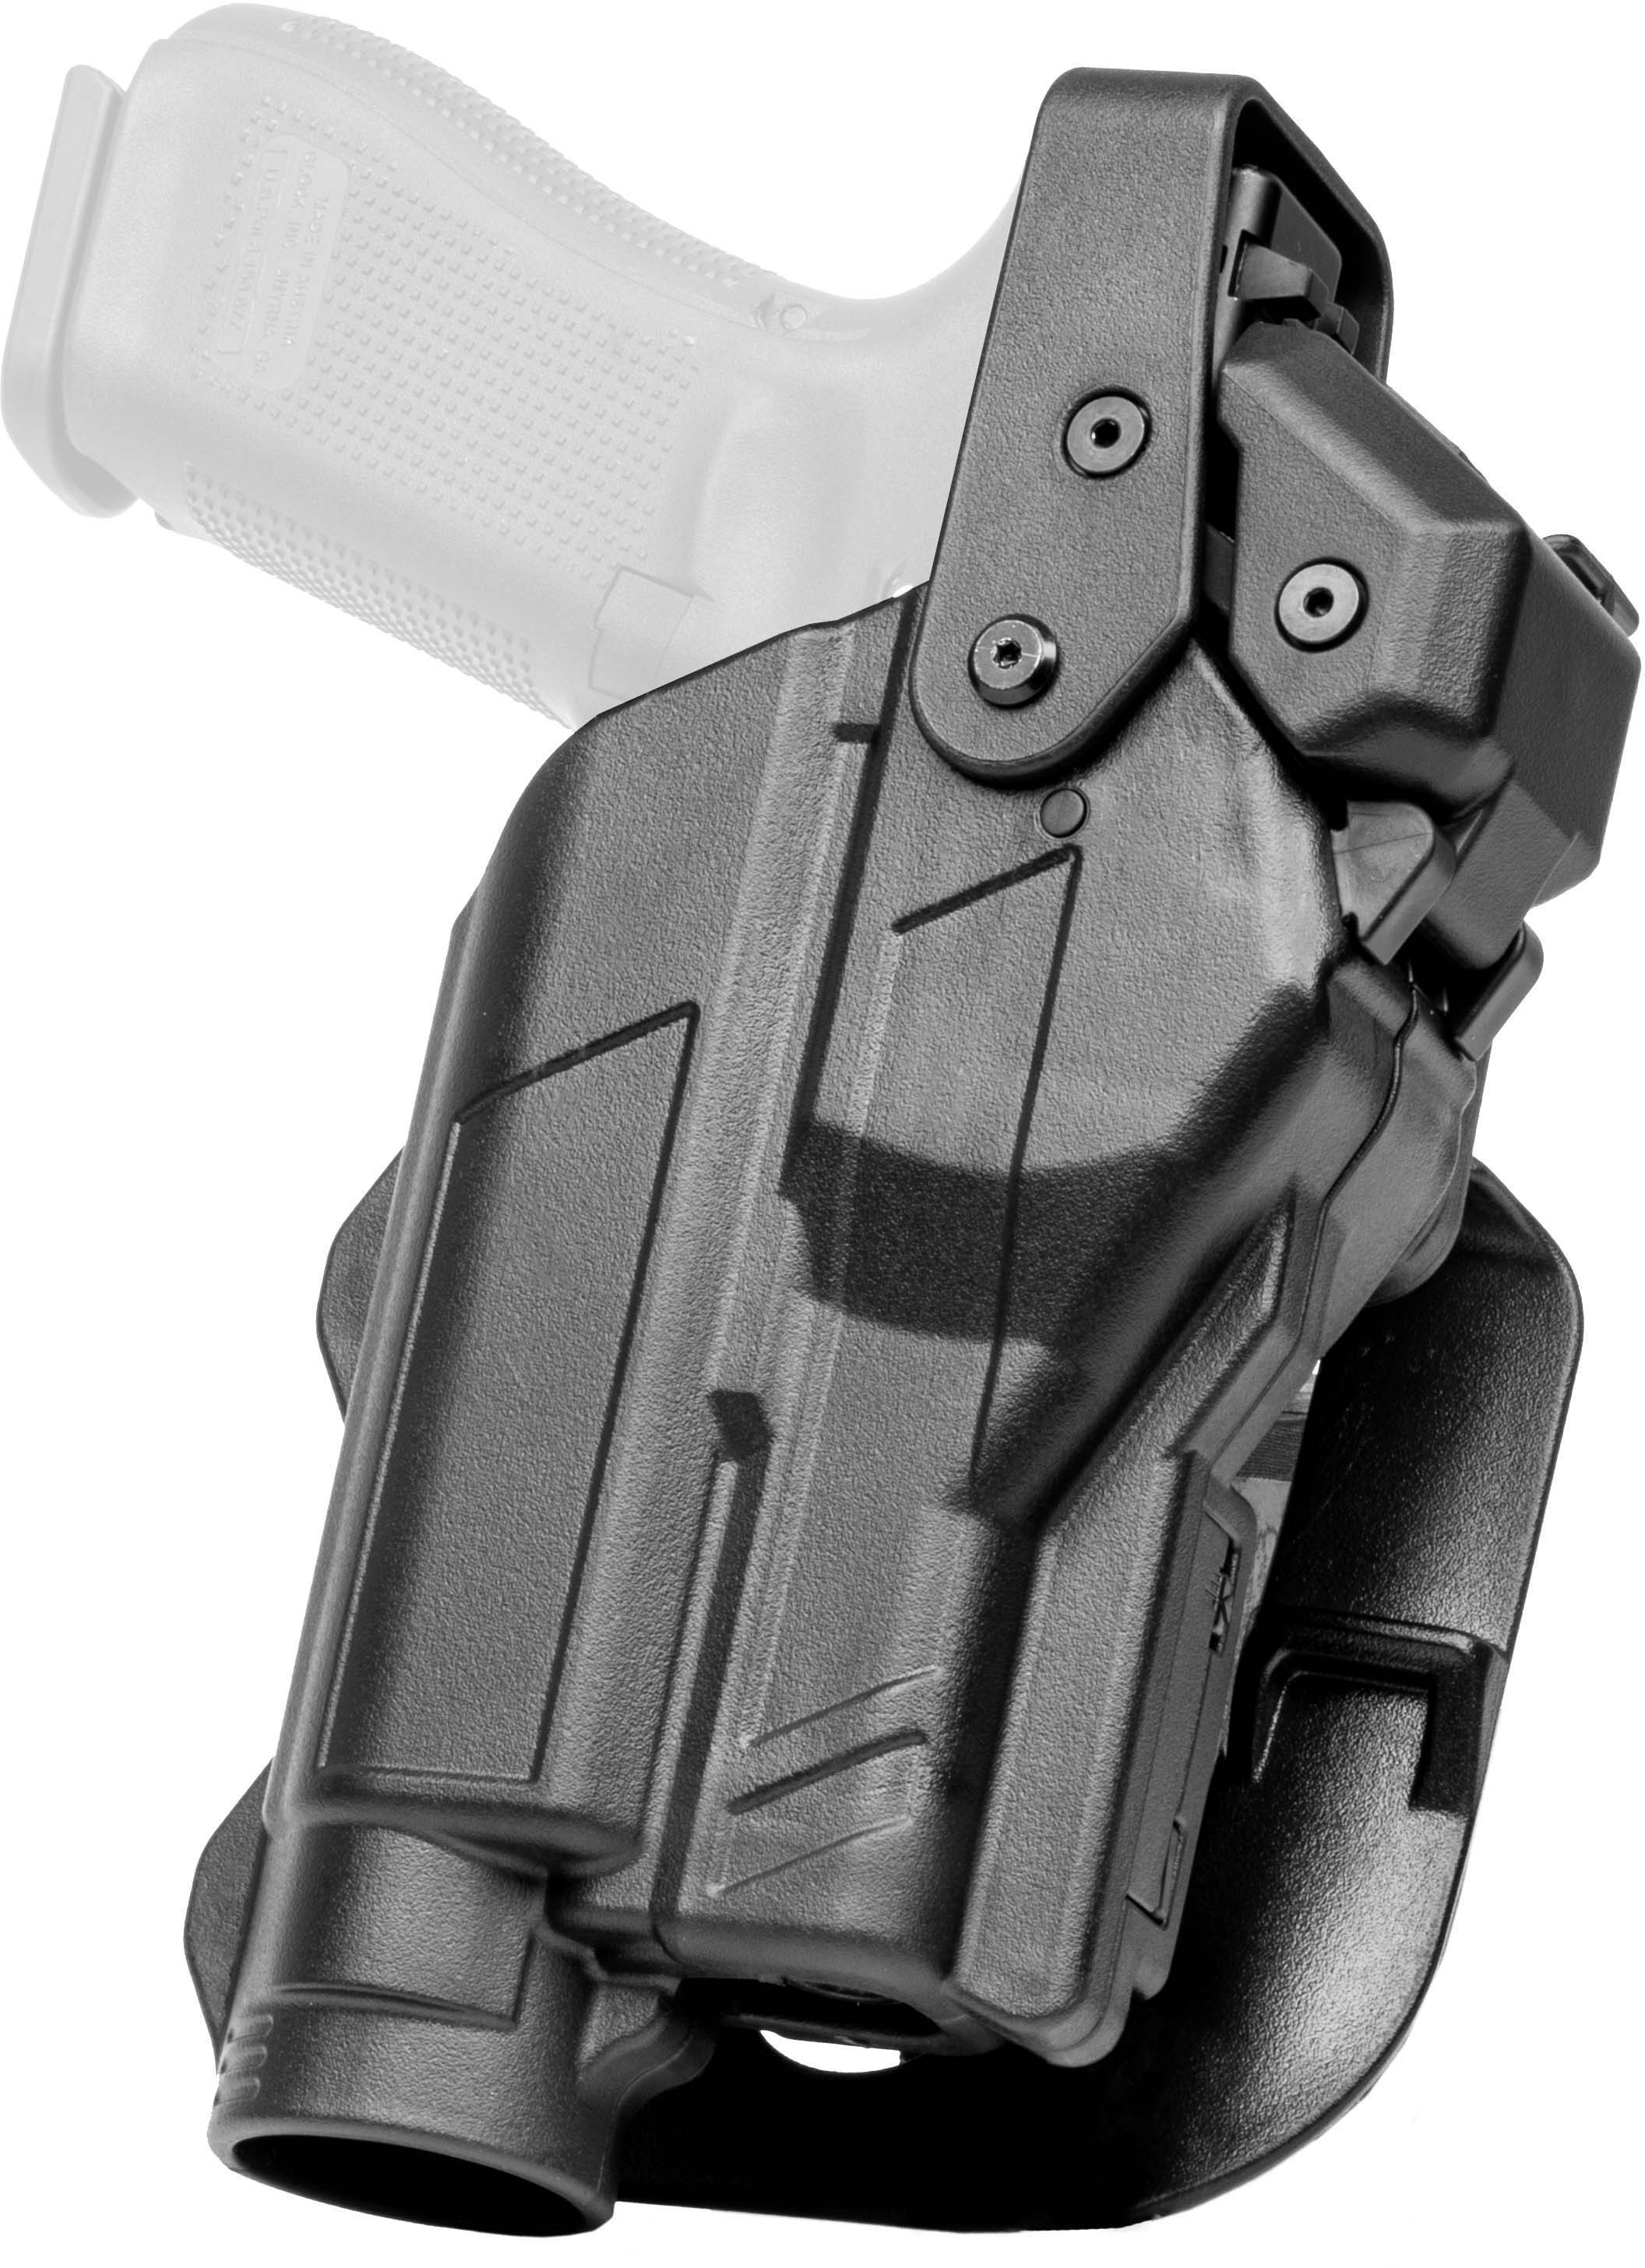 Alien Gear Rapid Force Level 3 Duty Holster for Glock 17 w/Light - Milspec  Retail